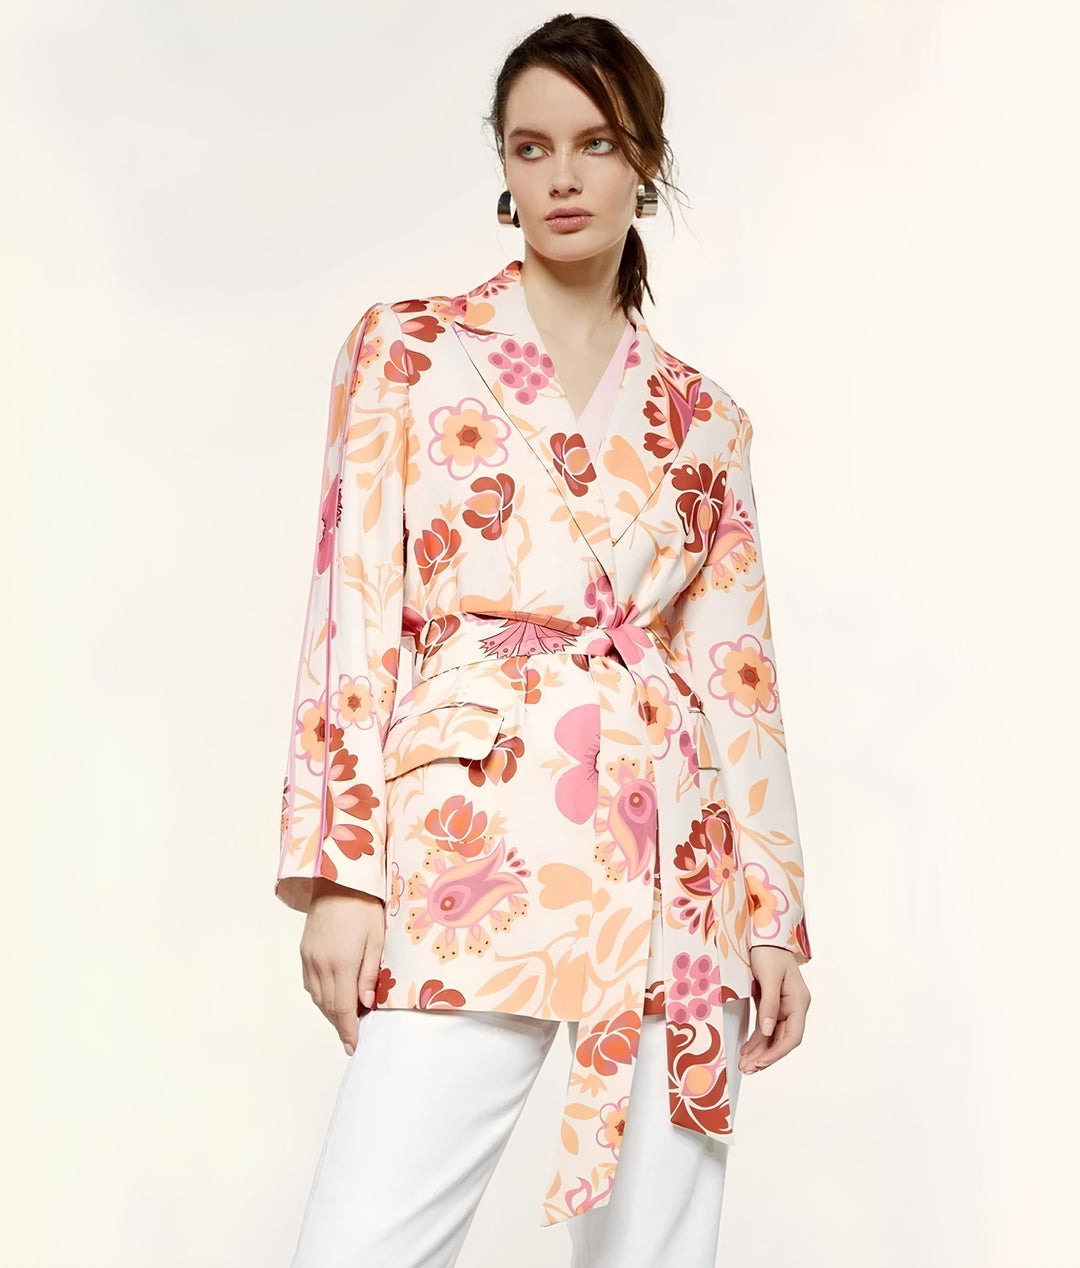 Σακάκι φλοράλ χωρίς κουμπί Access Fashion - A Collection Boutique